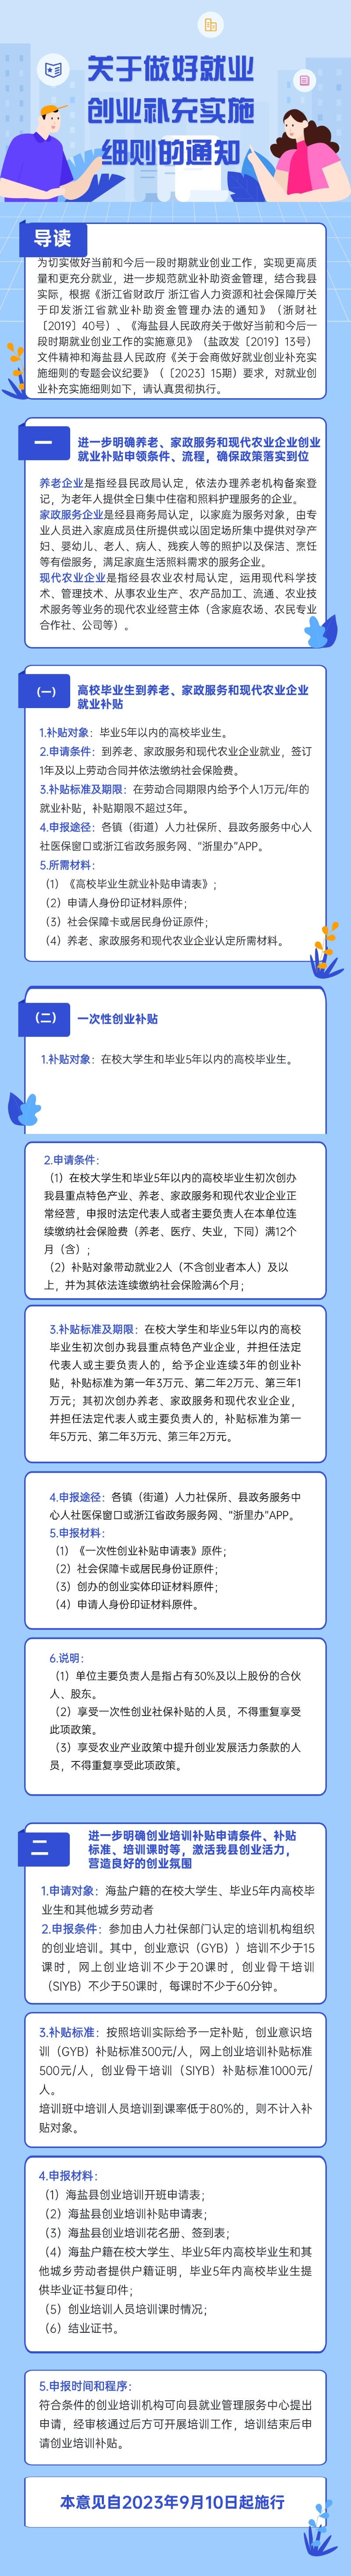 政策热点时政民生政务新闻文章长图(2).jpg